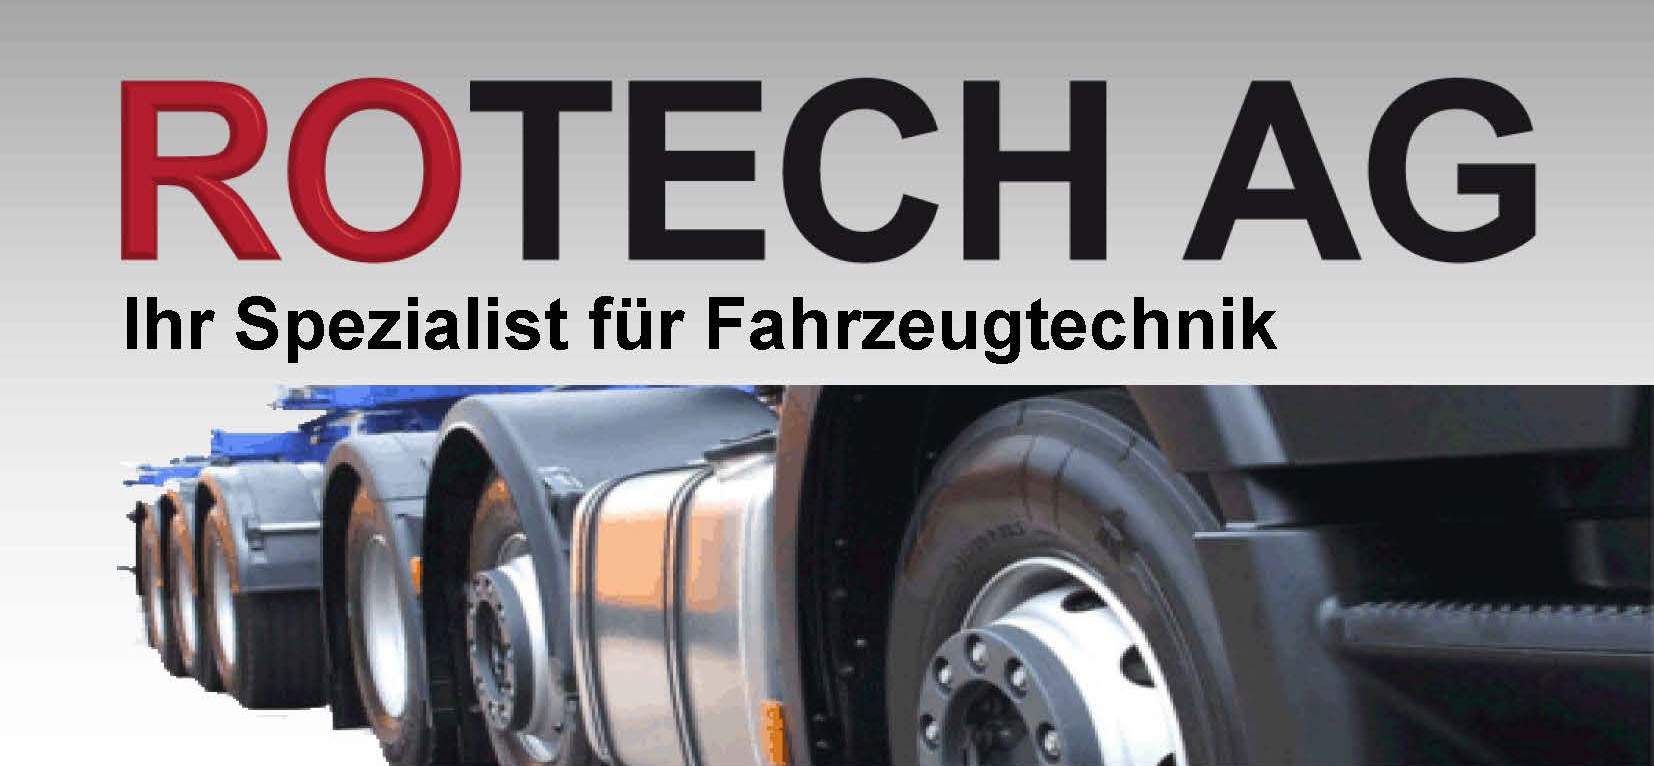 Zurrgurte für Autotransporte - Onlineshop von Rotech AG